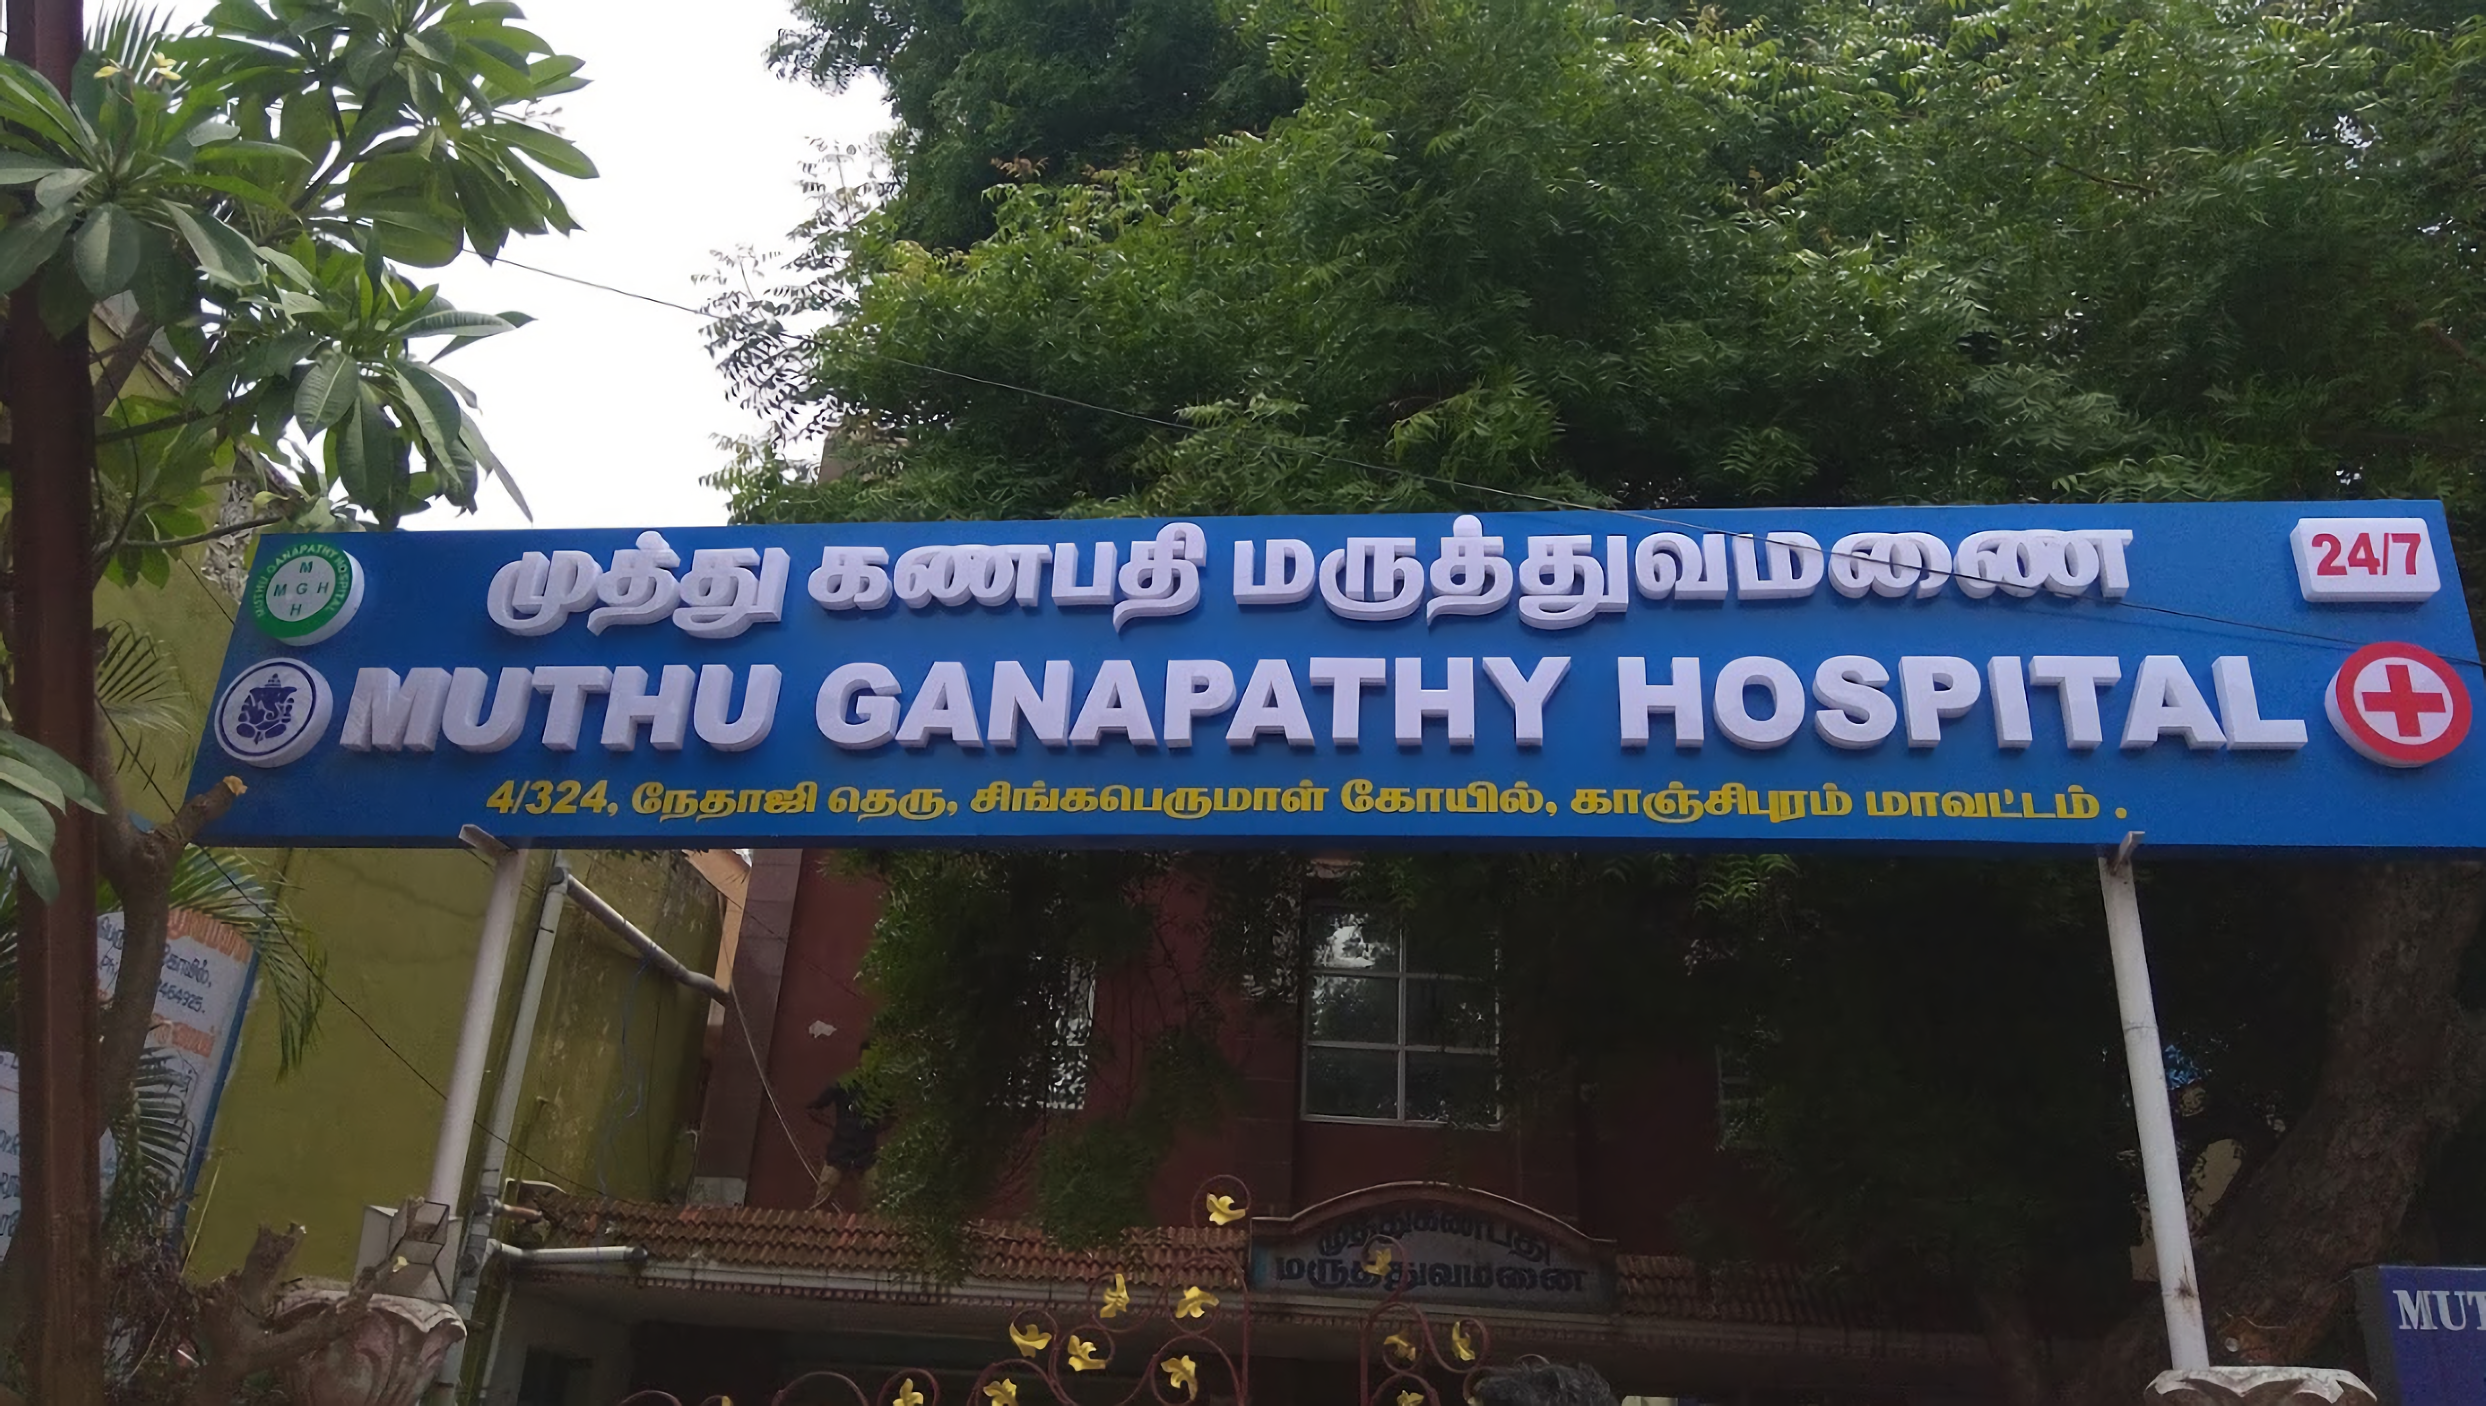 Muthu Ganapathy Hospital